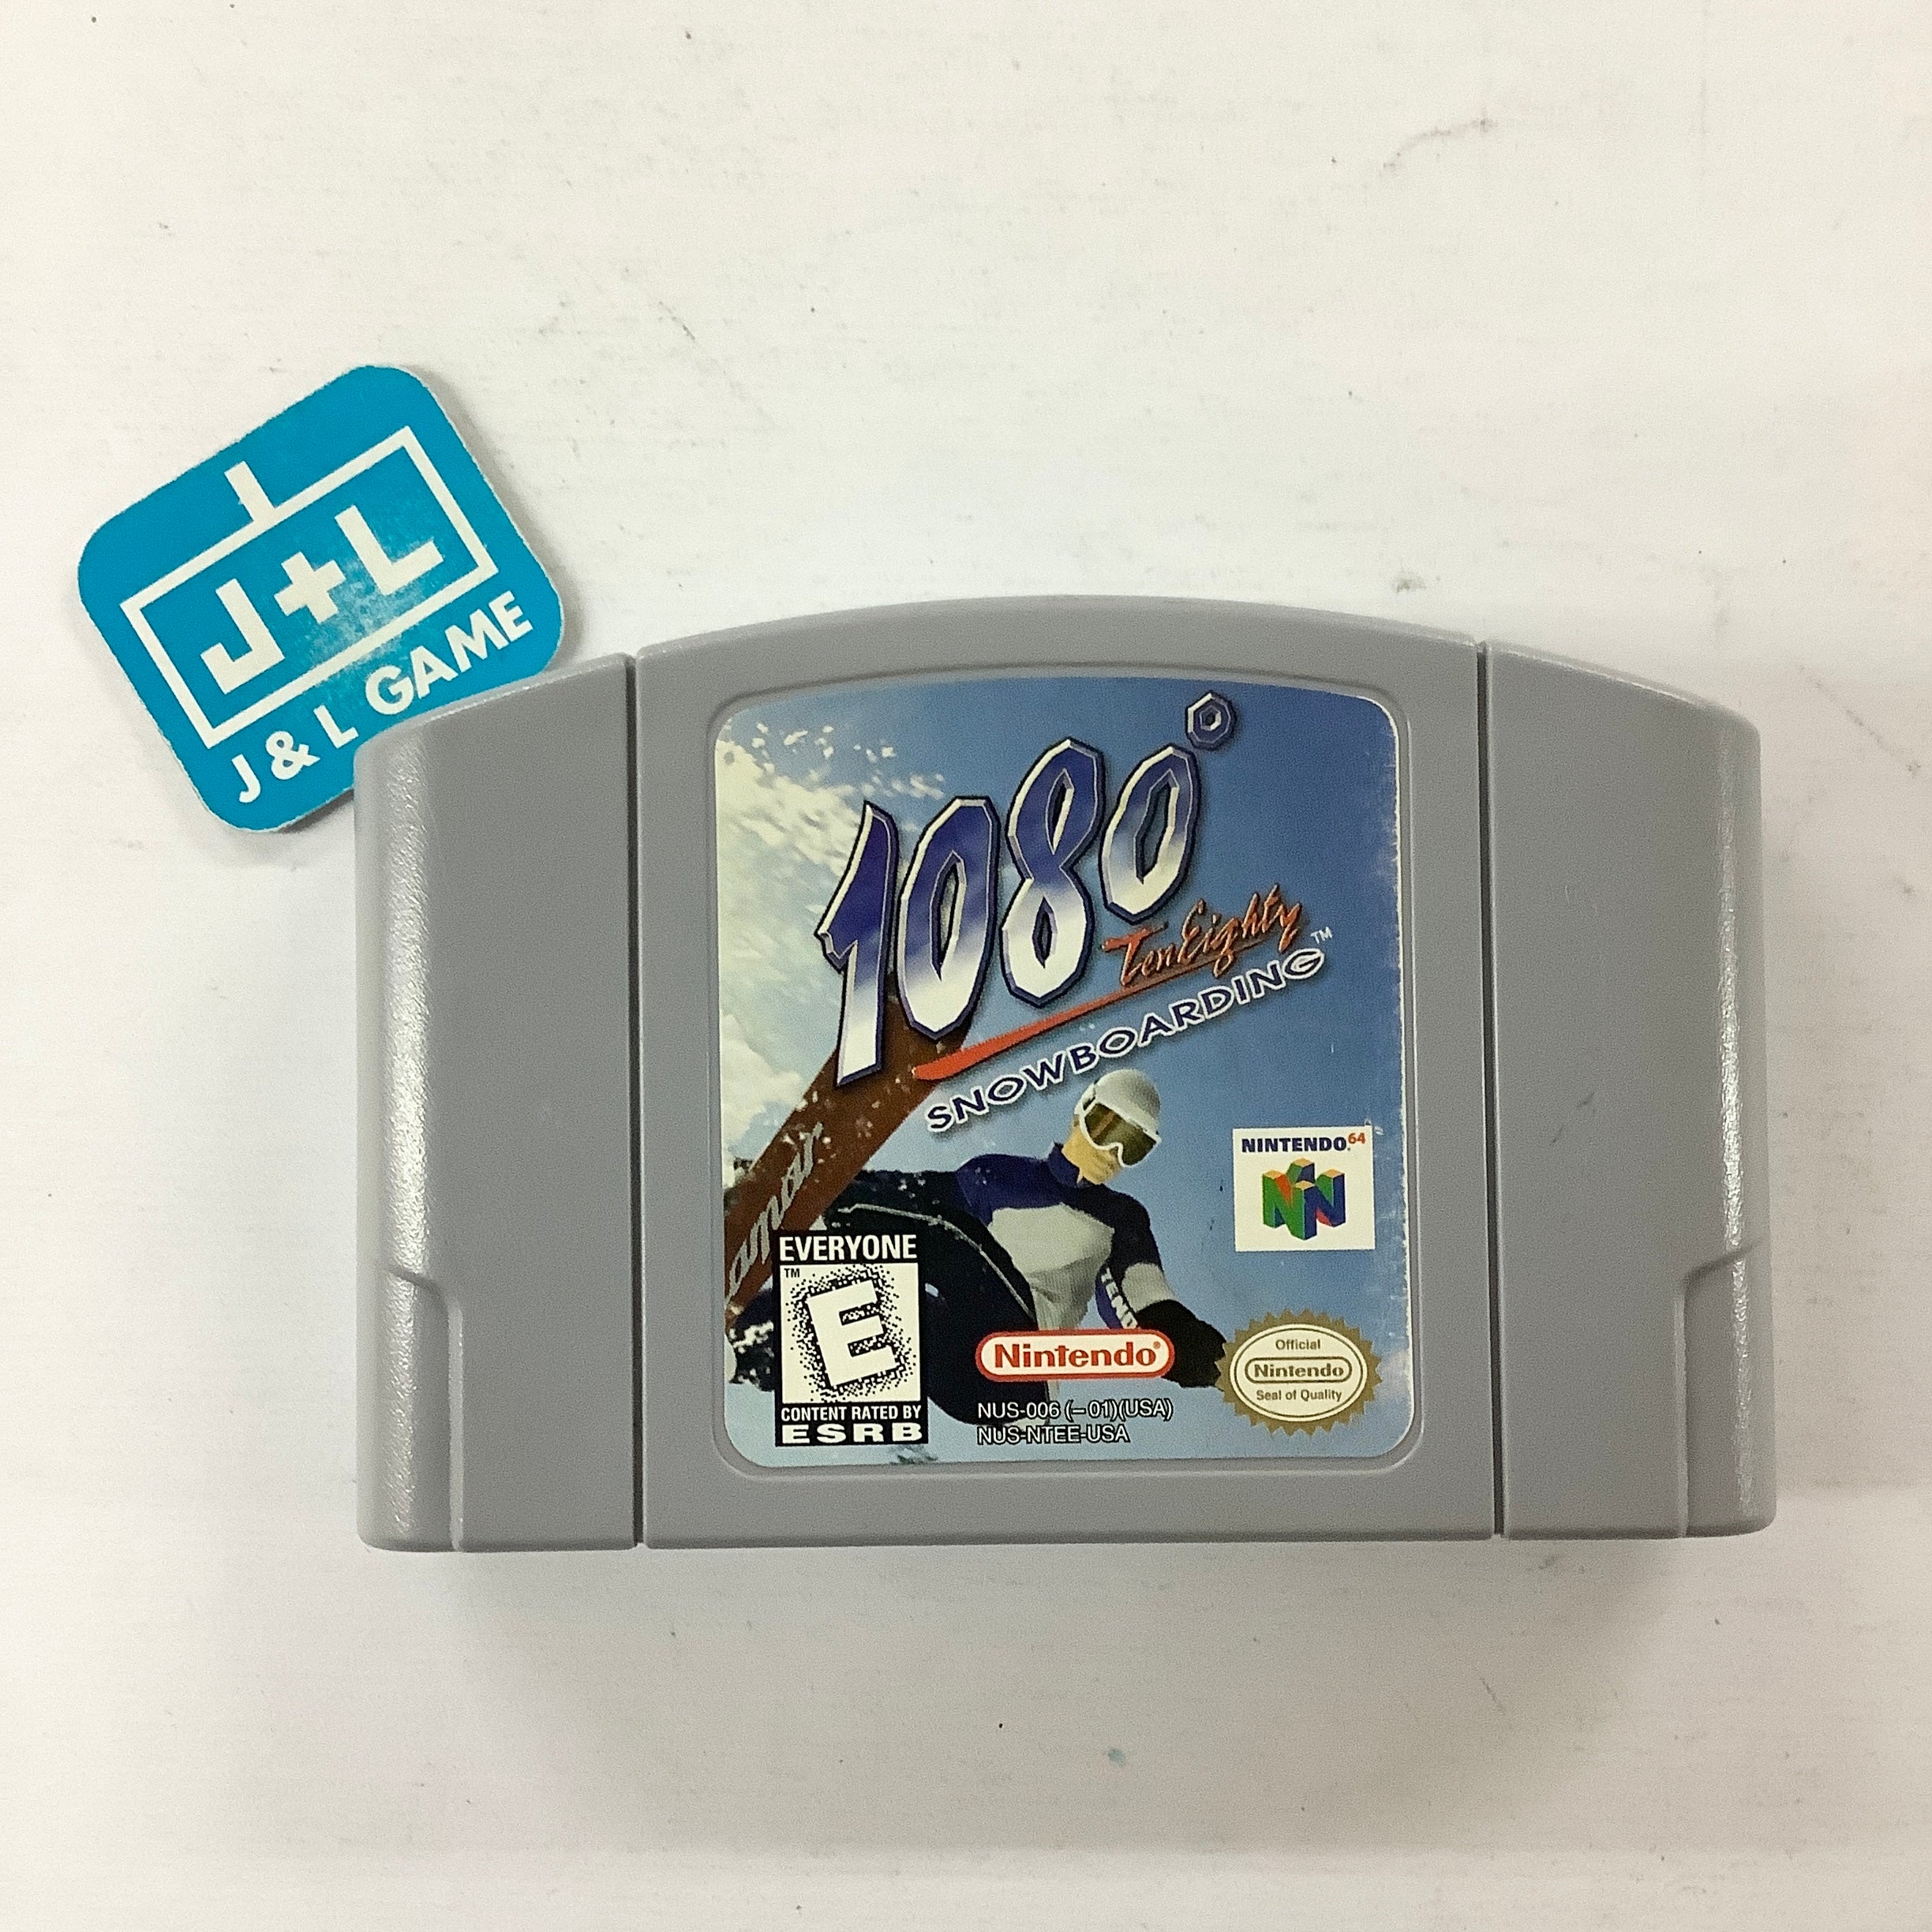 1080: TenEighty Snowboarding - (N64) Nintendo 64 [Pre-Owned] Video Games Nintendo   